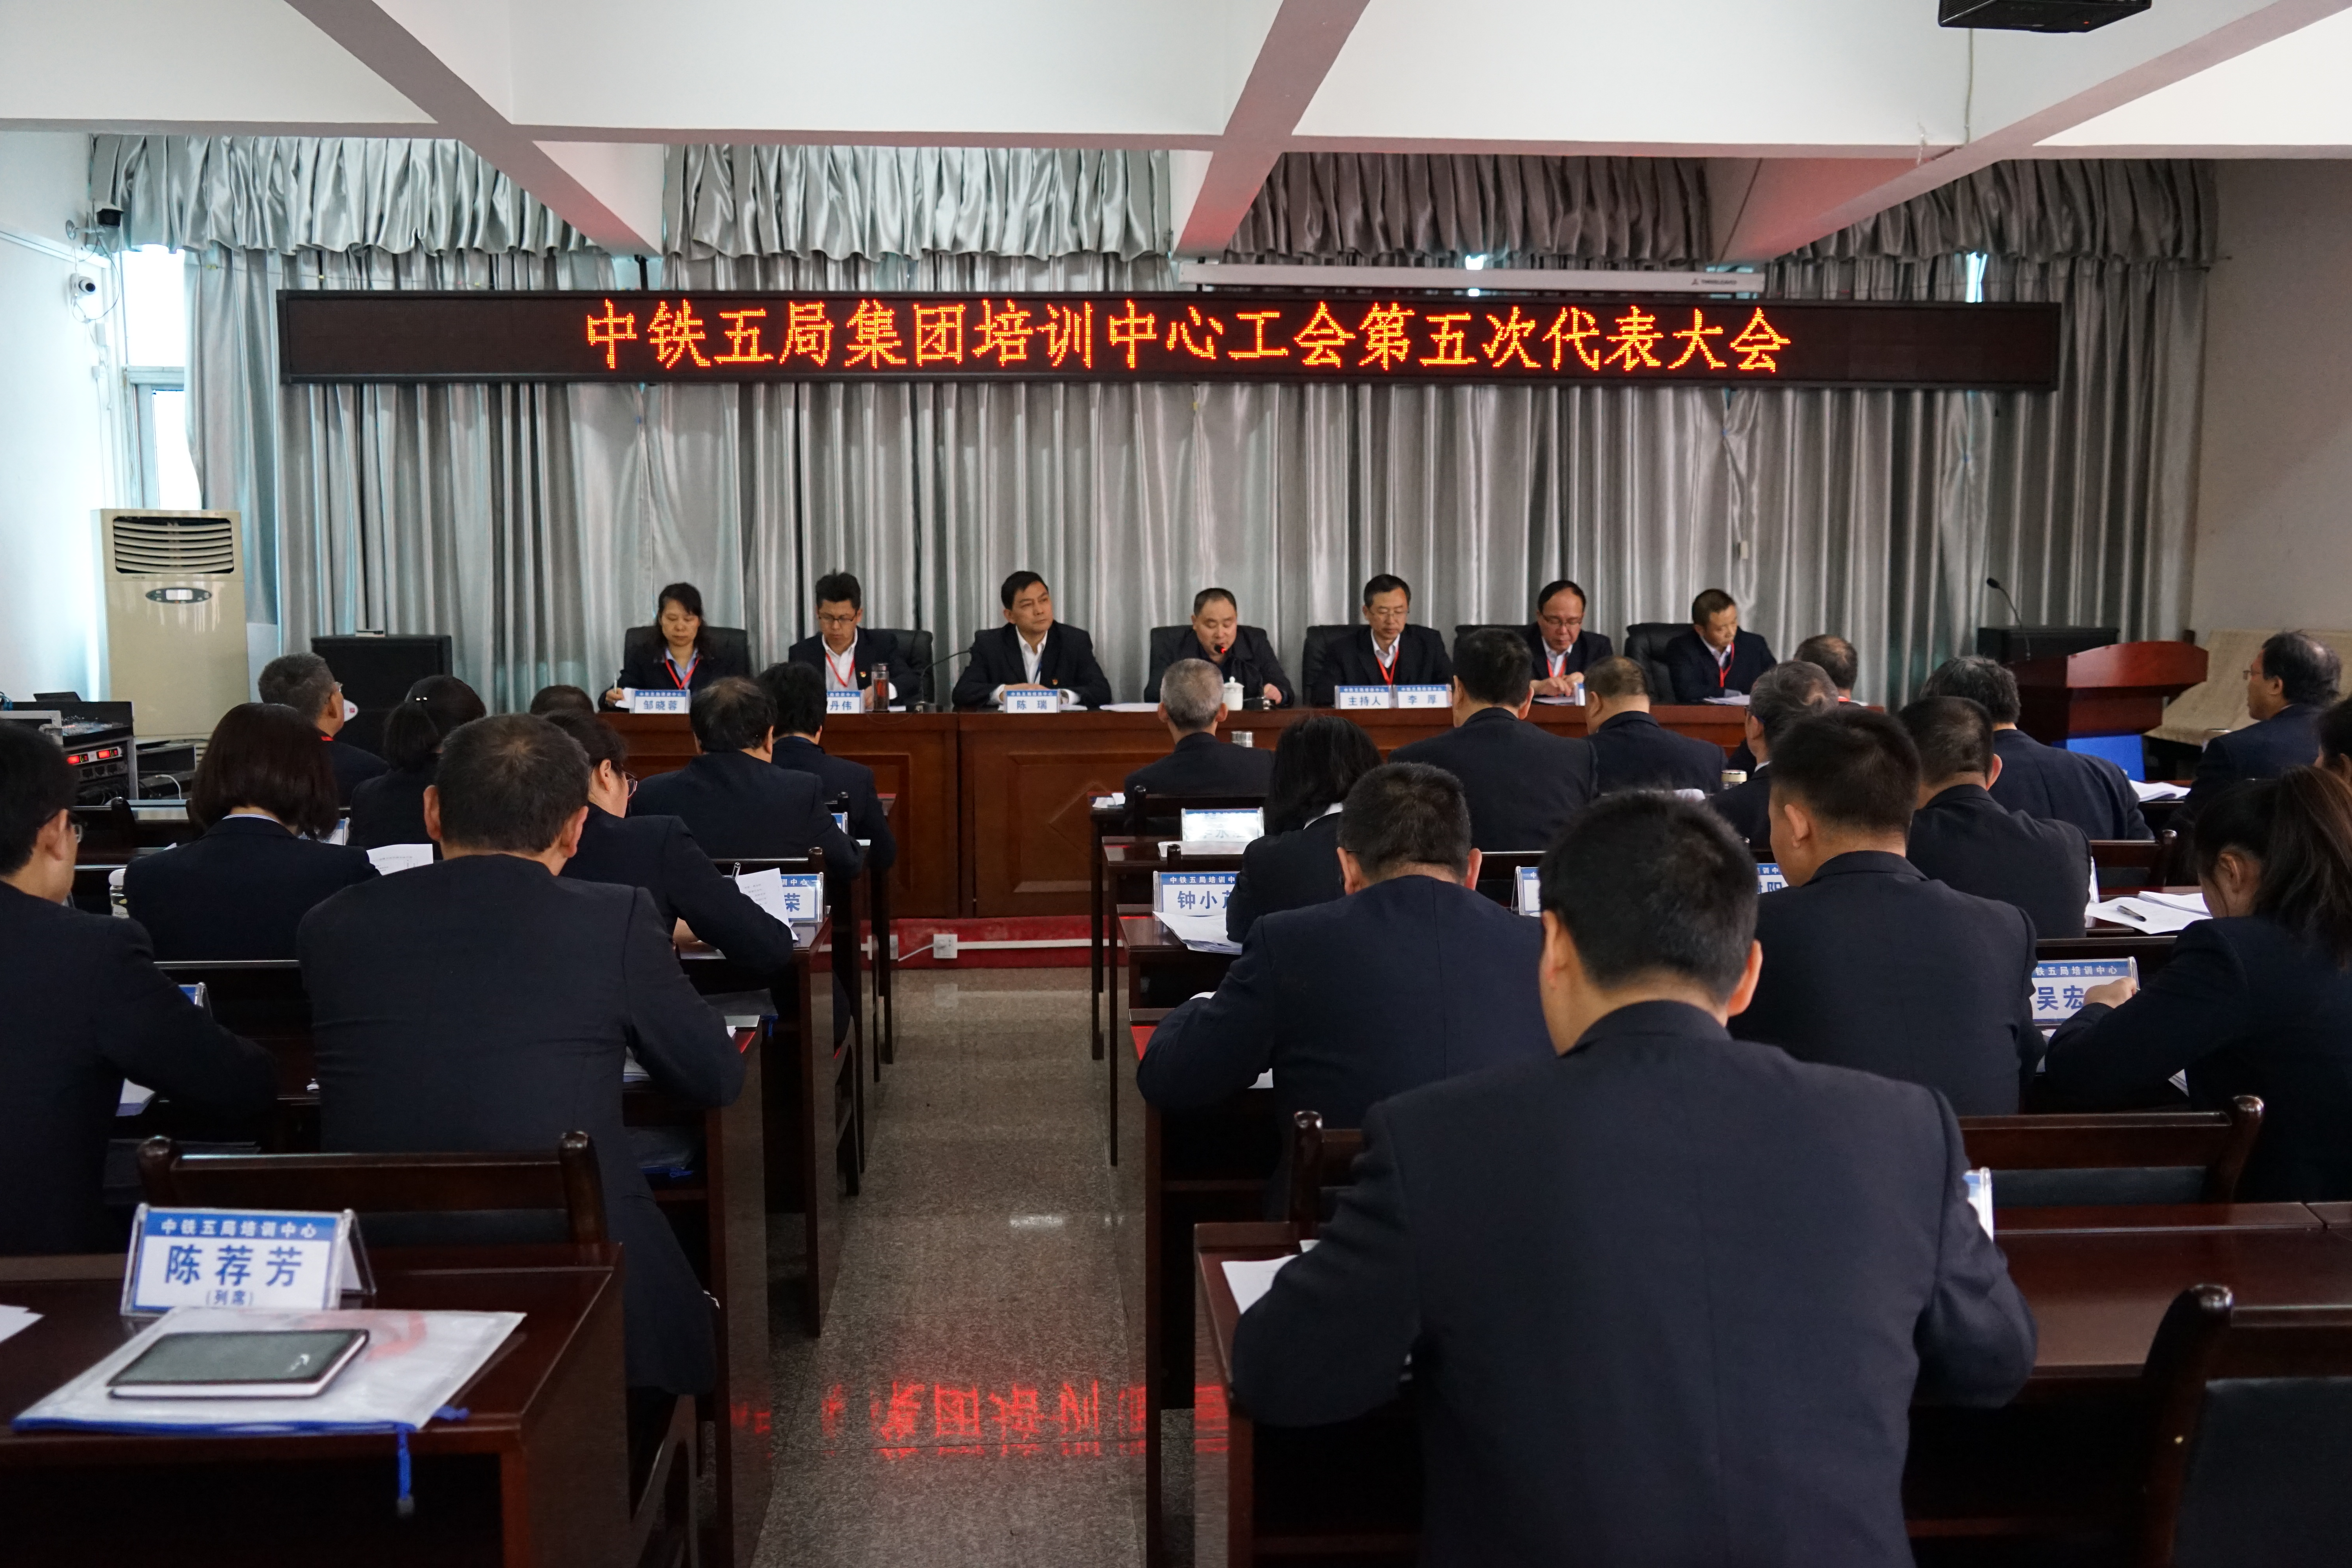 贵州铁路技师学院召开第五次工会代表大会